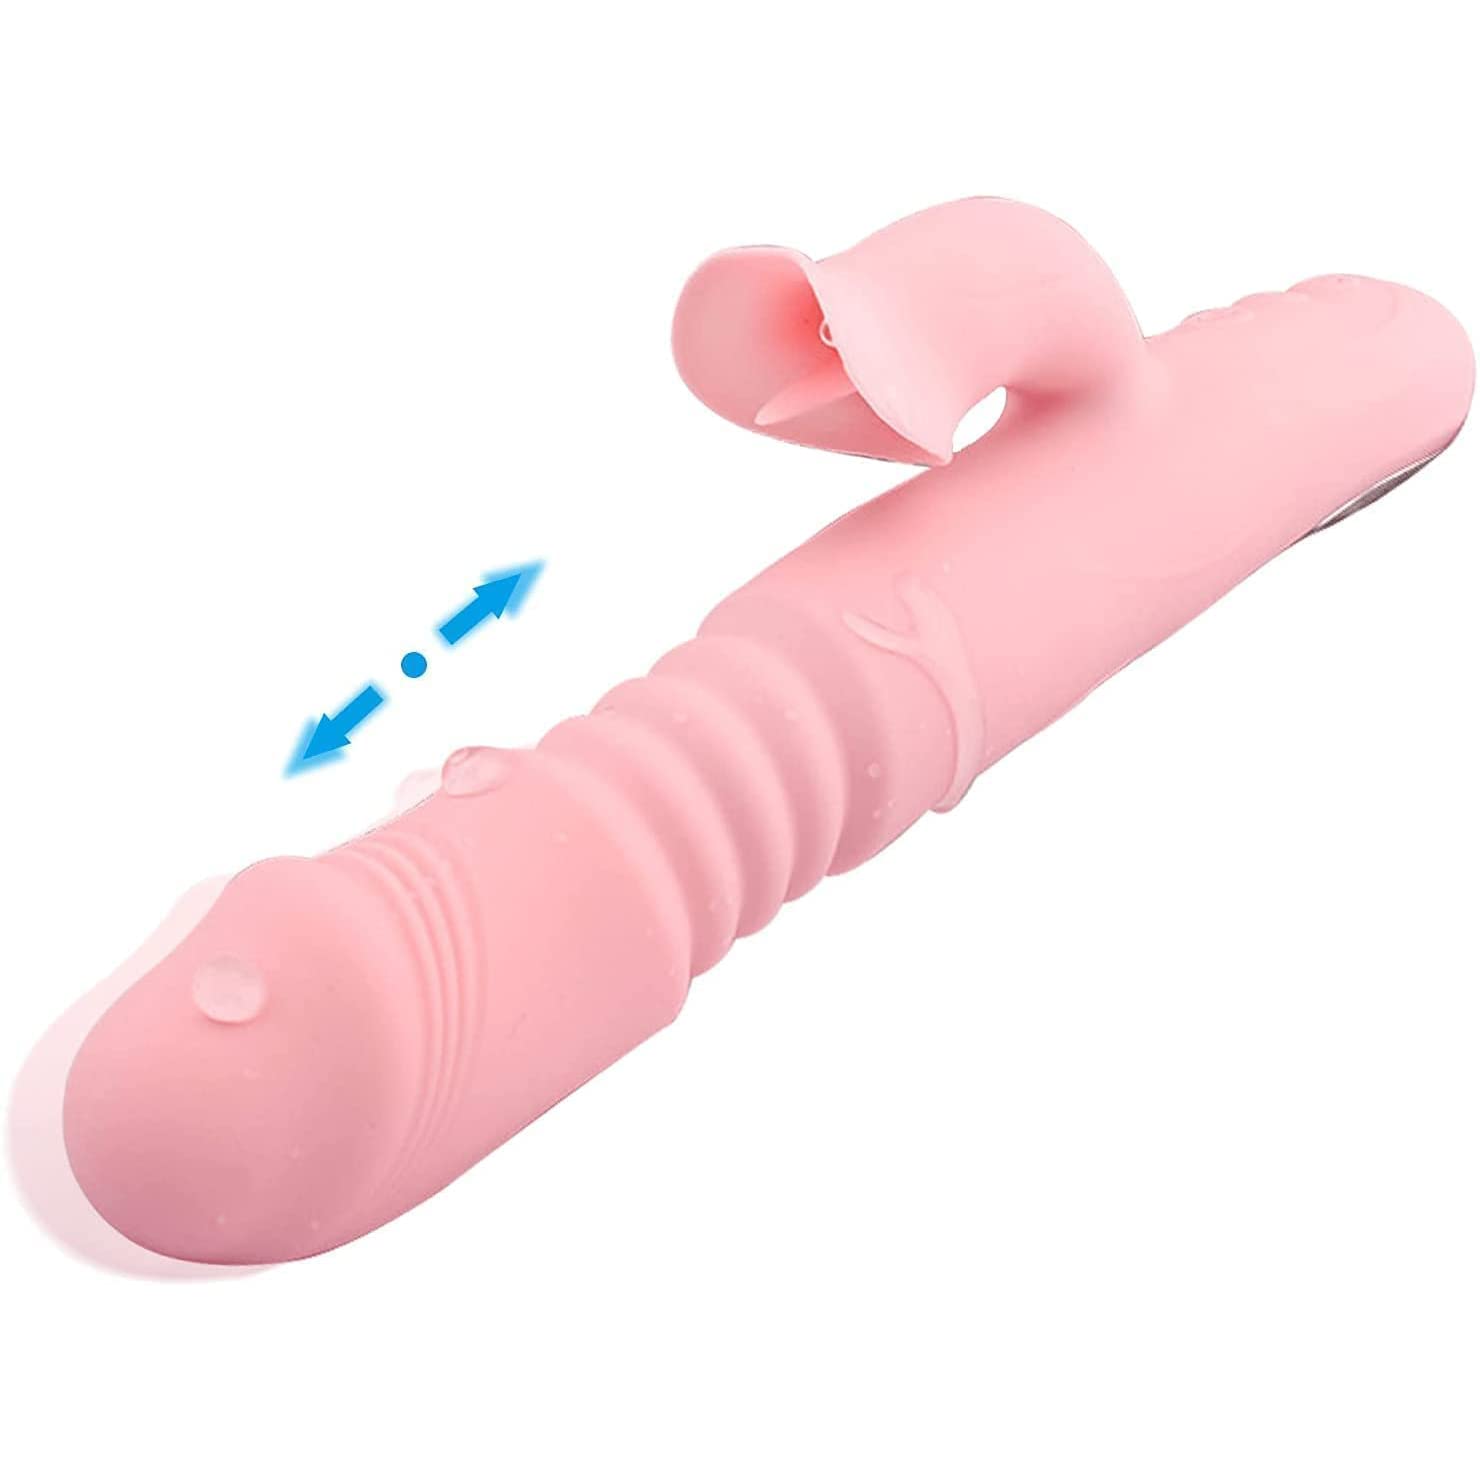 Thrusting Vibrator For Women, Vibrator Adult Sensory Toys G Spot Sex T pic